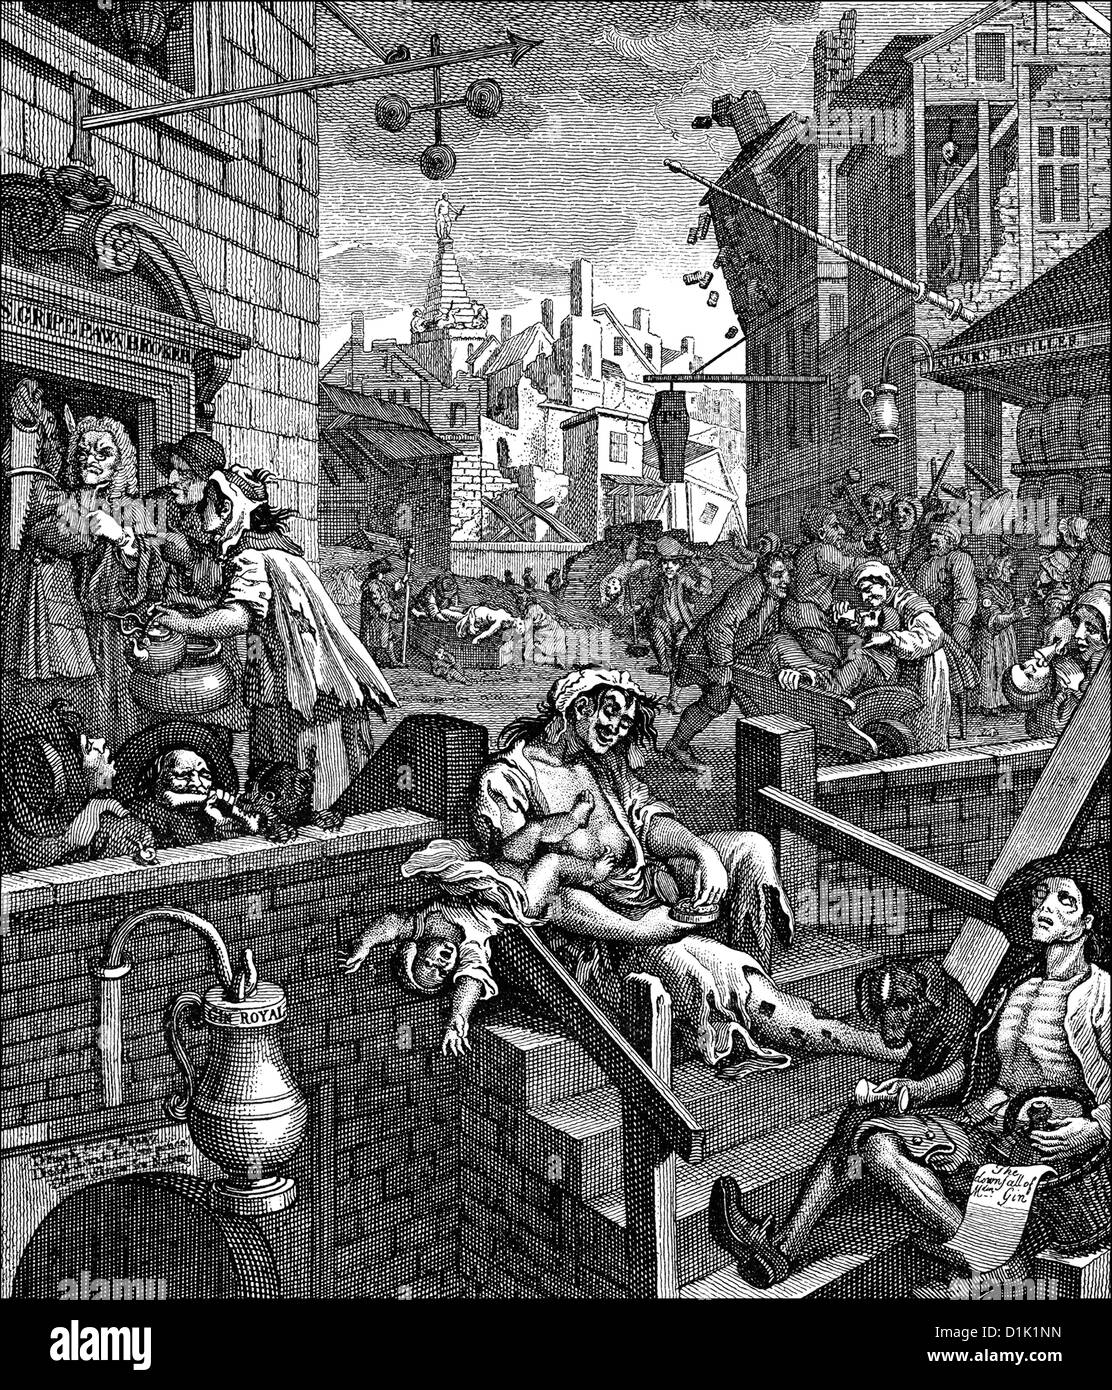 Gin Lane ou alcool Alley, une caricature, image symbolique sur l'alcoolisme dans le 18e siècle en Angleterre, par William Hogarth, 1697 - Banque D'Images